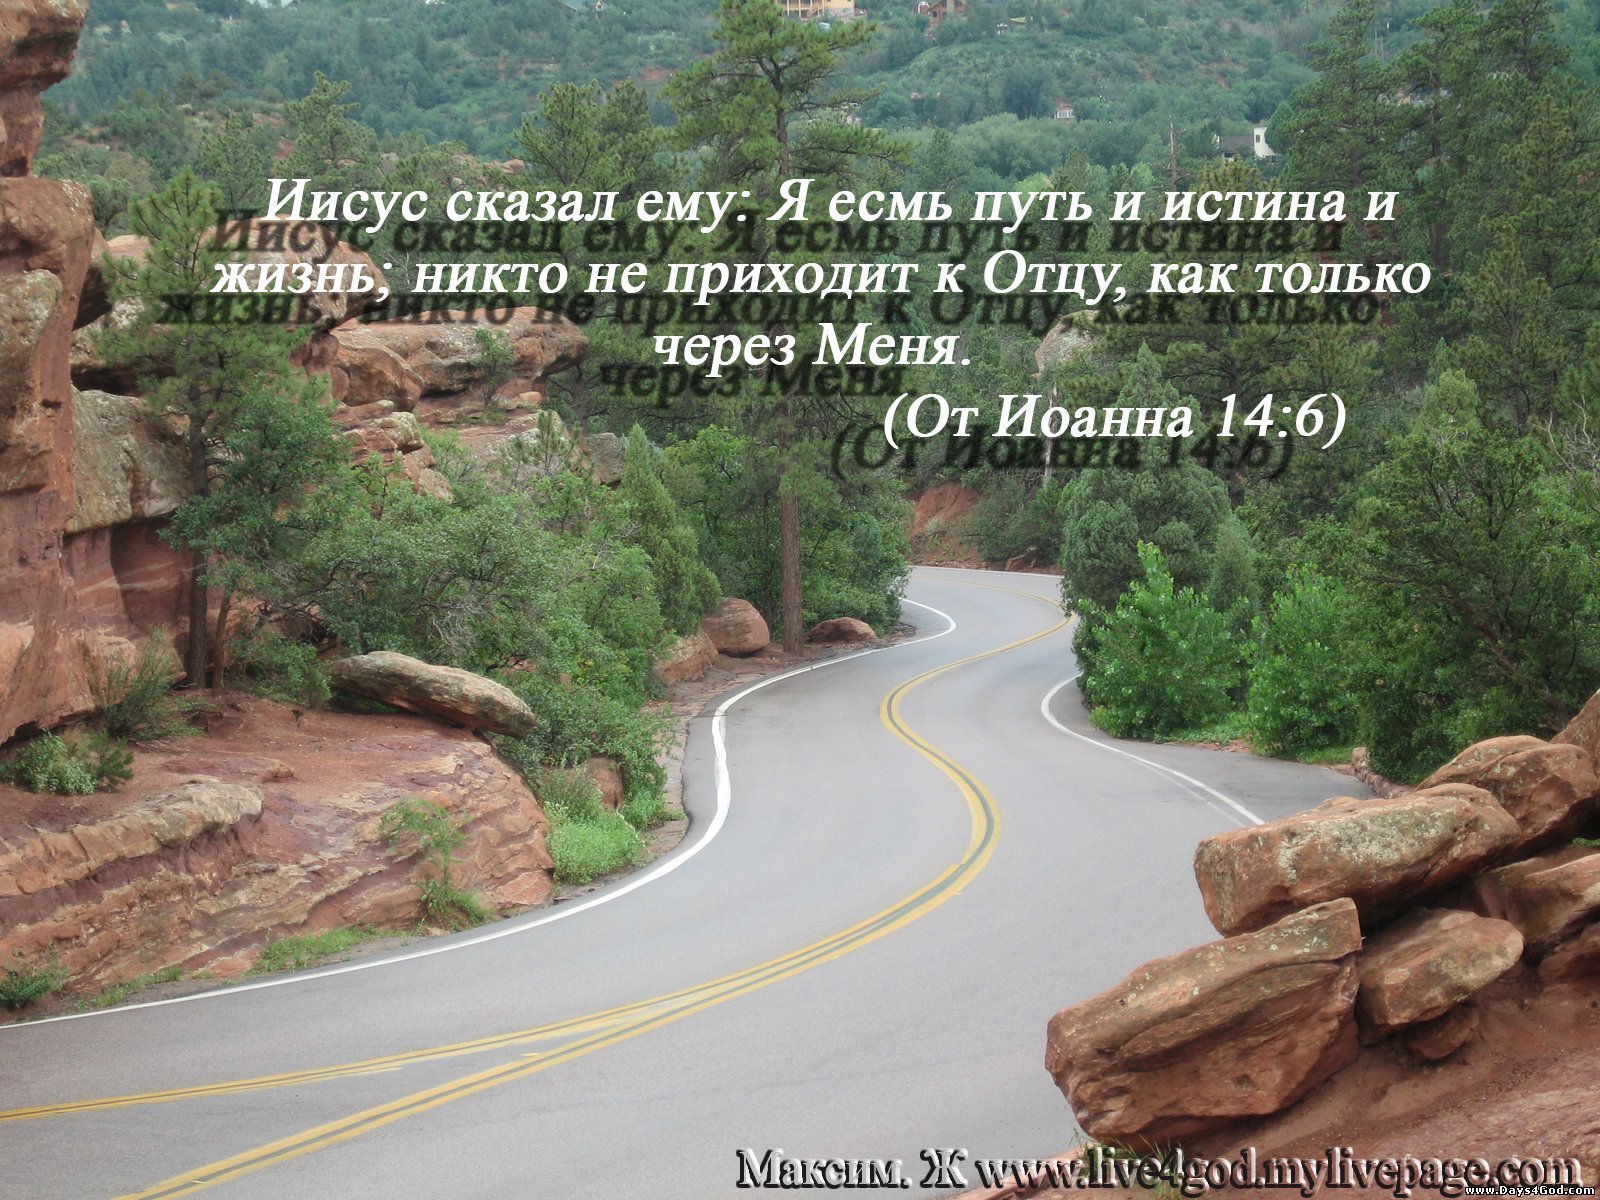 Замечай на своем пути. Путь, истина и жизнь. Жизненные дороги. Иисус Христос путь истина и жизнь. Фразы про путь.